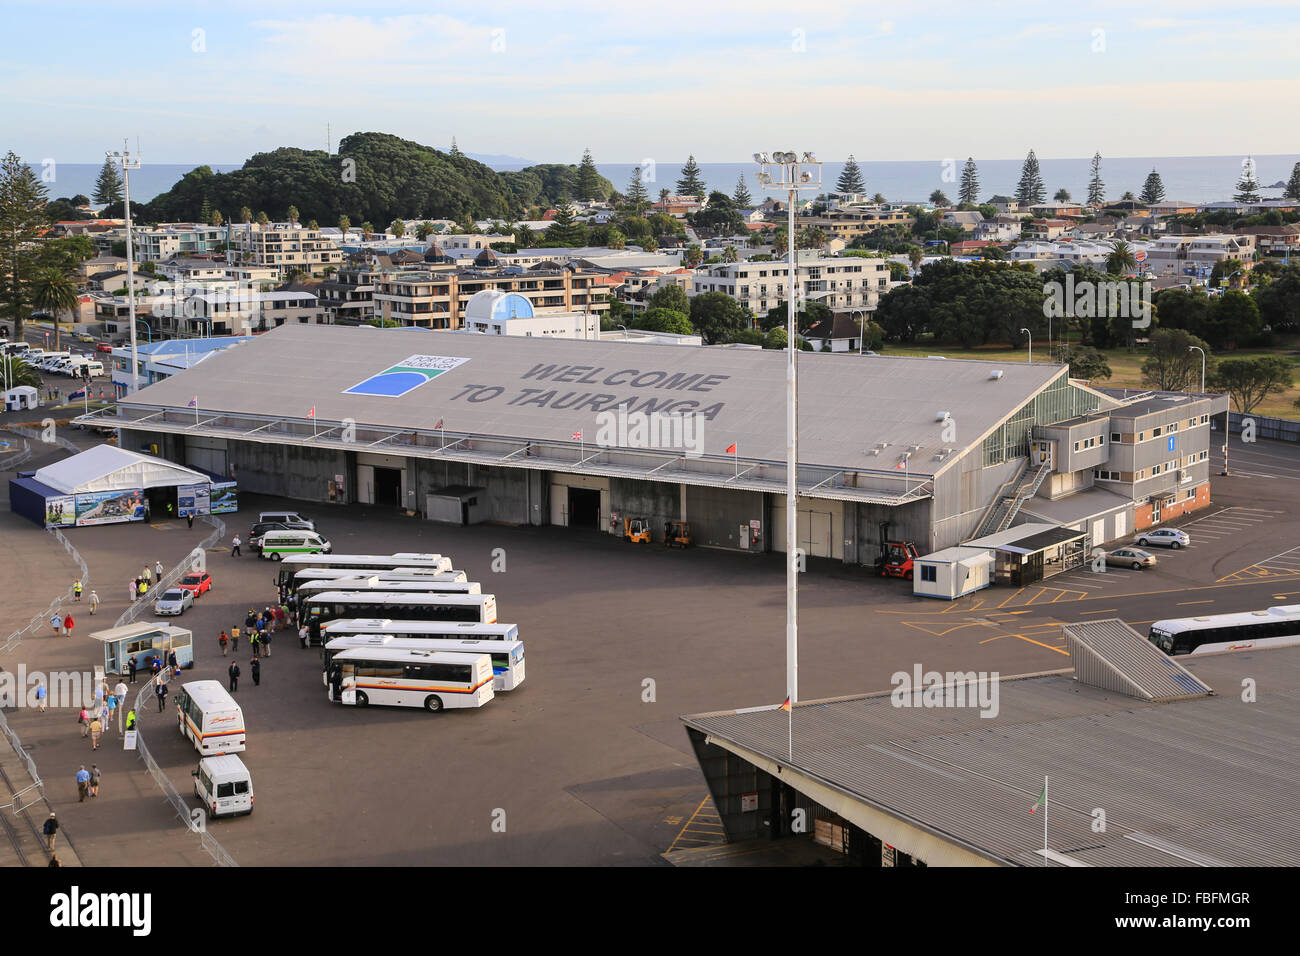 Benvenuti al segno di Tauranga saluta la nave di crociera visitatori presso il porto di Tauranga mentre gli autobus e tour operator di attendere presso il dock. Foto Stock